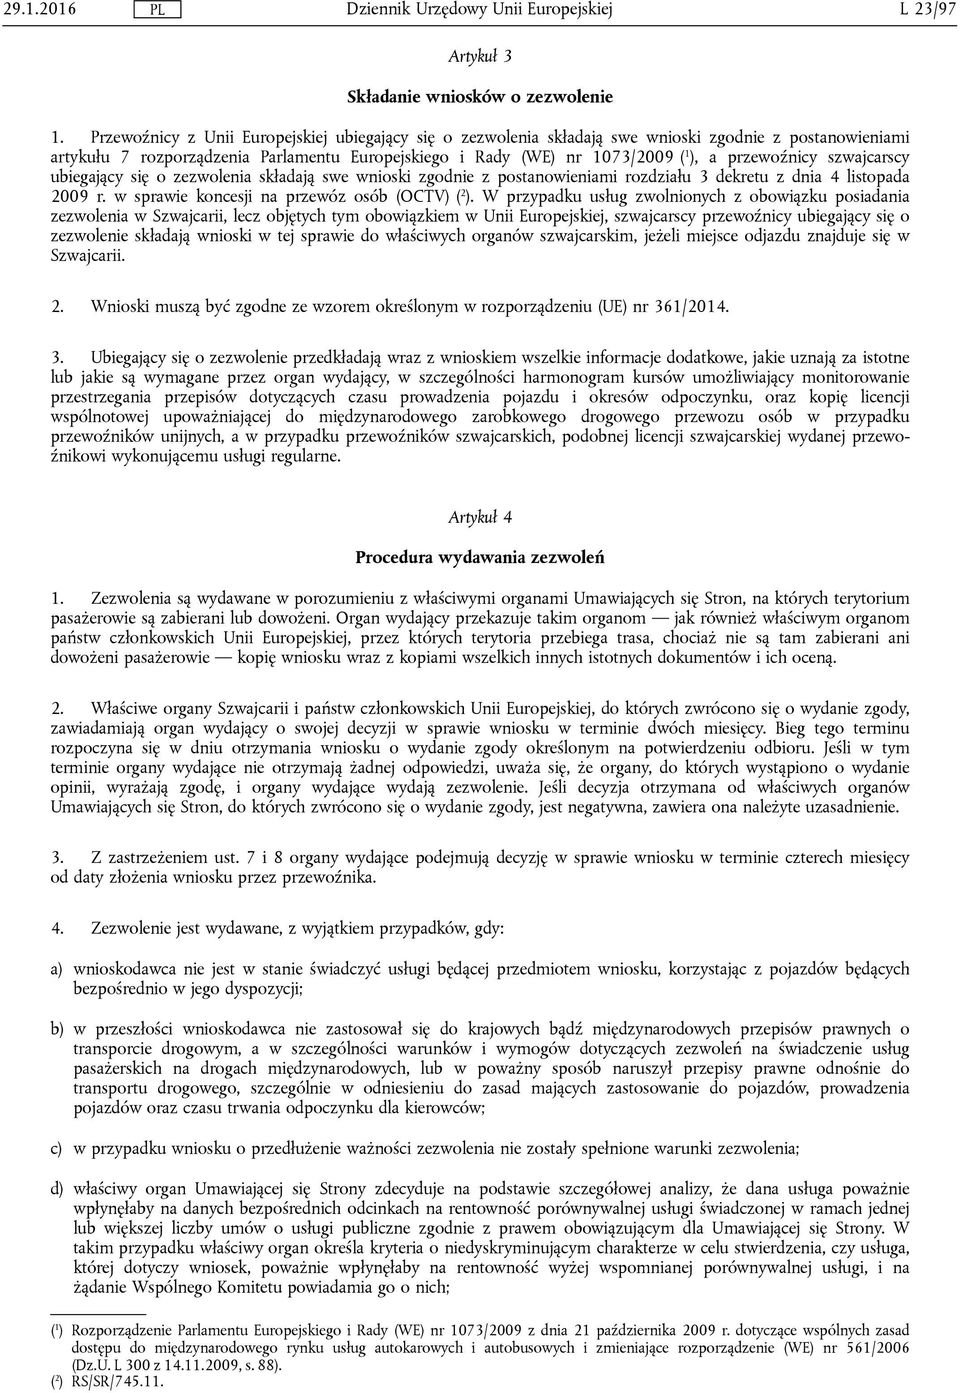 przewoźnicy szwajcarscy ubiegający się o zezwolenia składają swe wnioski zgodnie z postanowieniami rozdziału 3 dekretu z dnia 4 listopada 2009 r. w sprawie koncesji na przewóz osób (OCTV) ( 2 ).